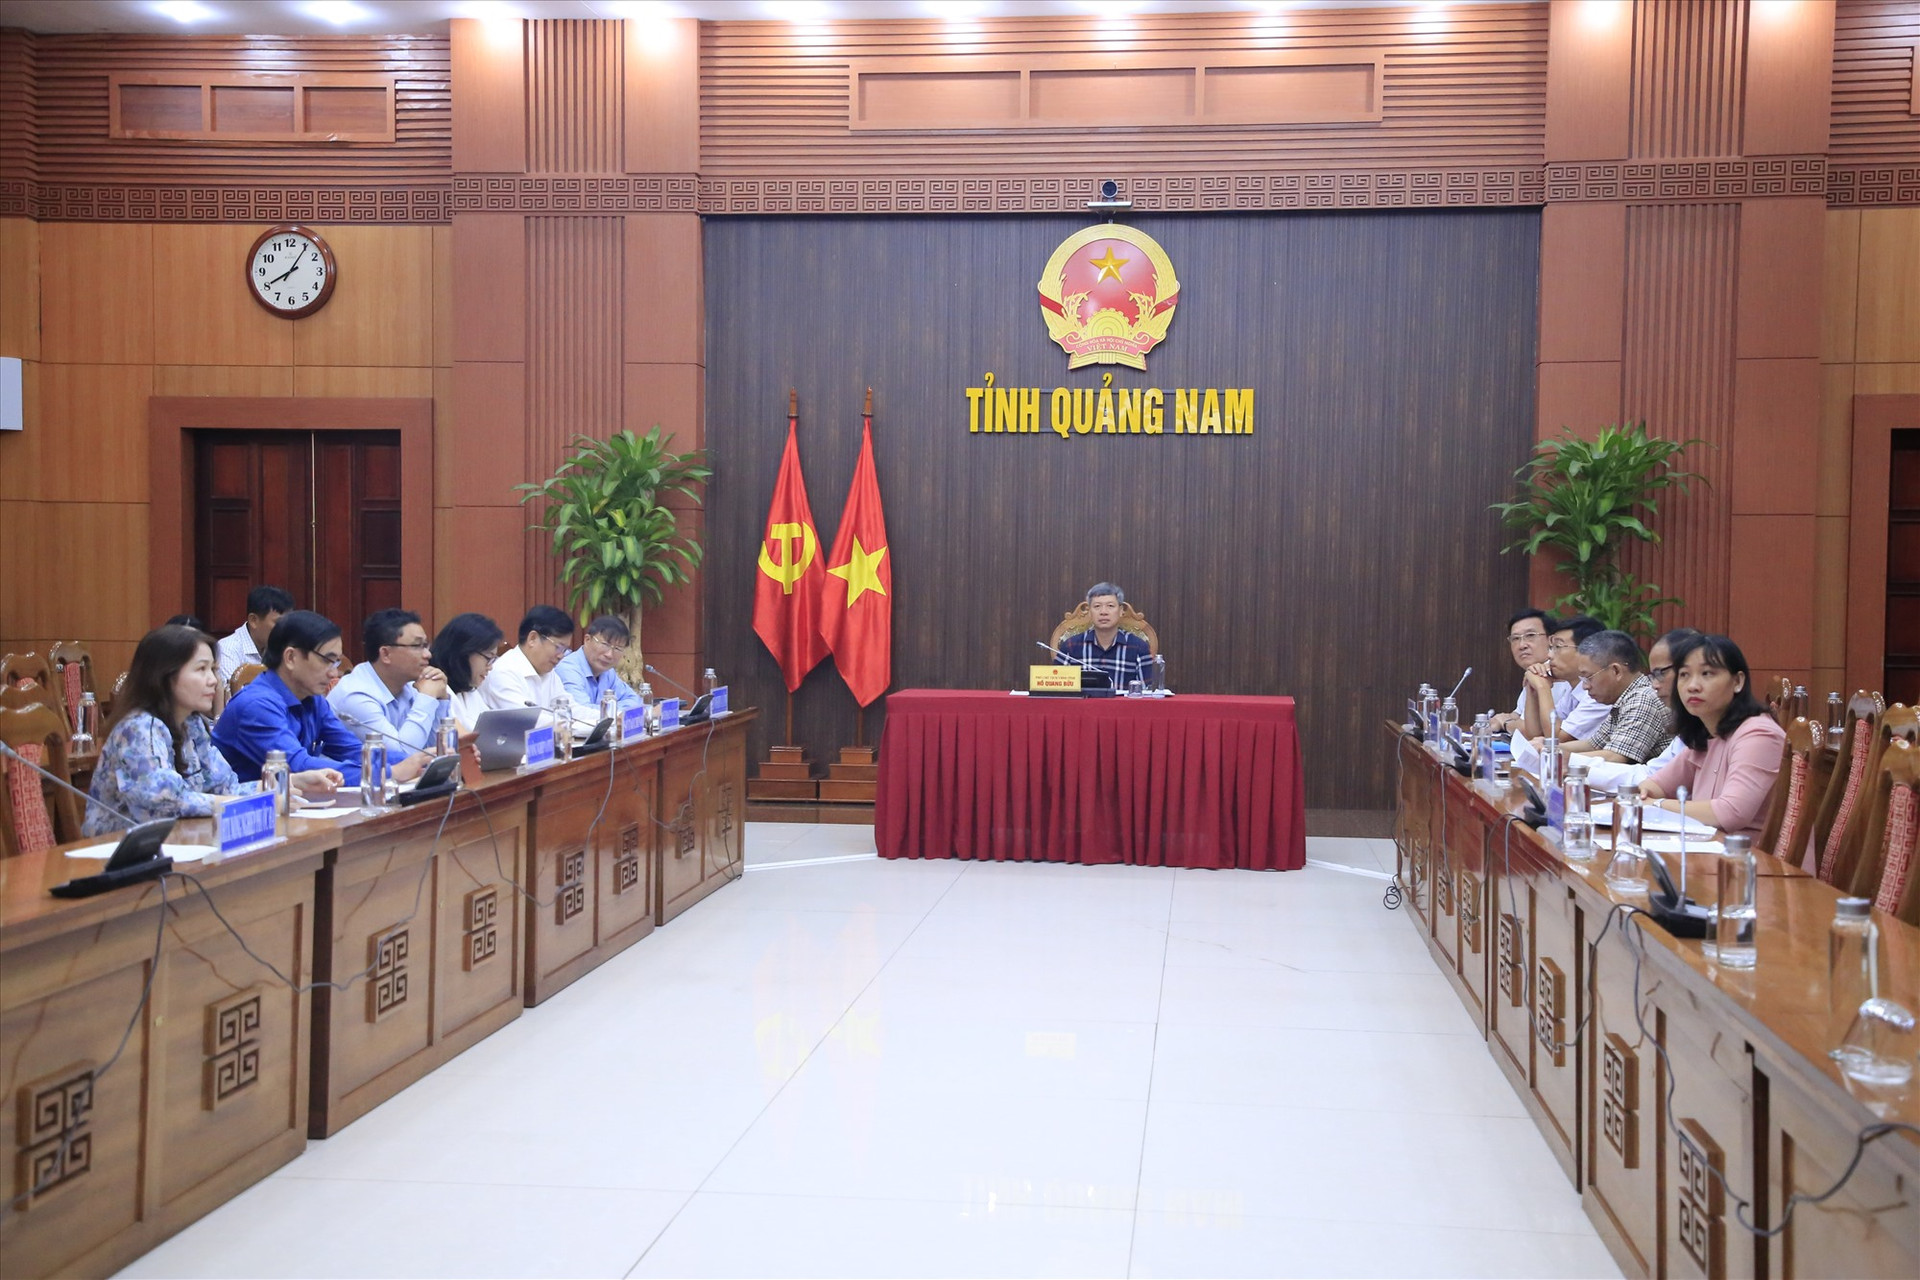 Phó Chủ tịch UBND tỉnh Hồ Quang Bửu chủ trì điểm cầu hội nghị. Ảnh: C.S